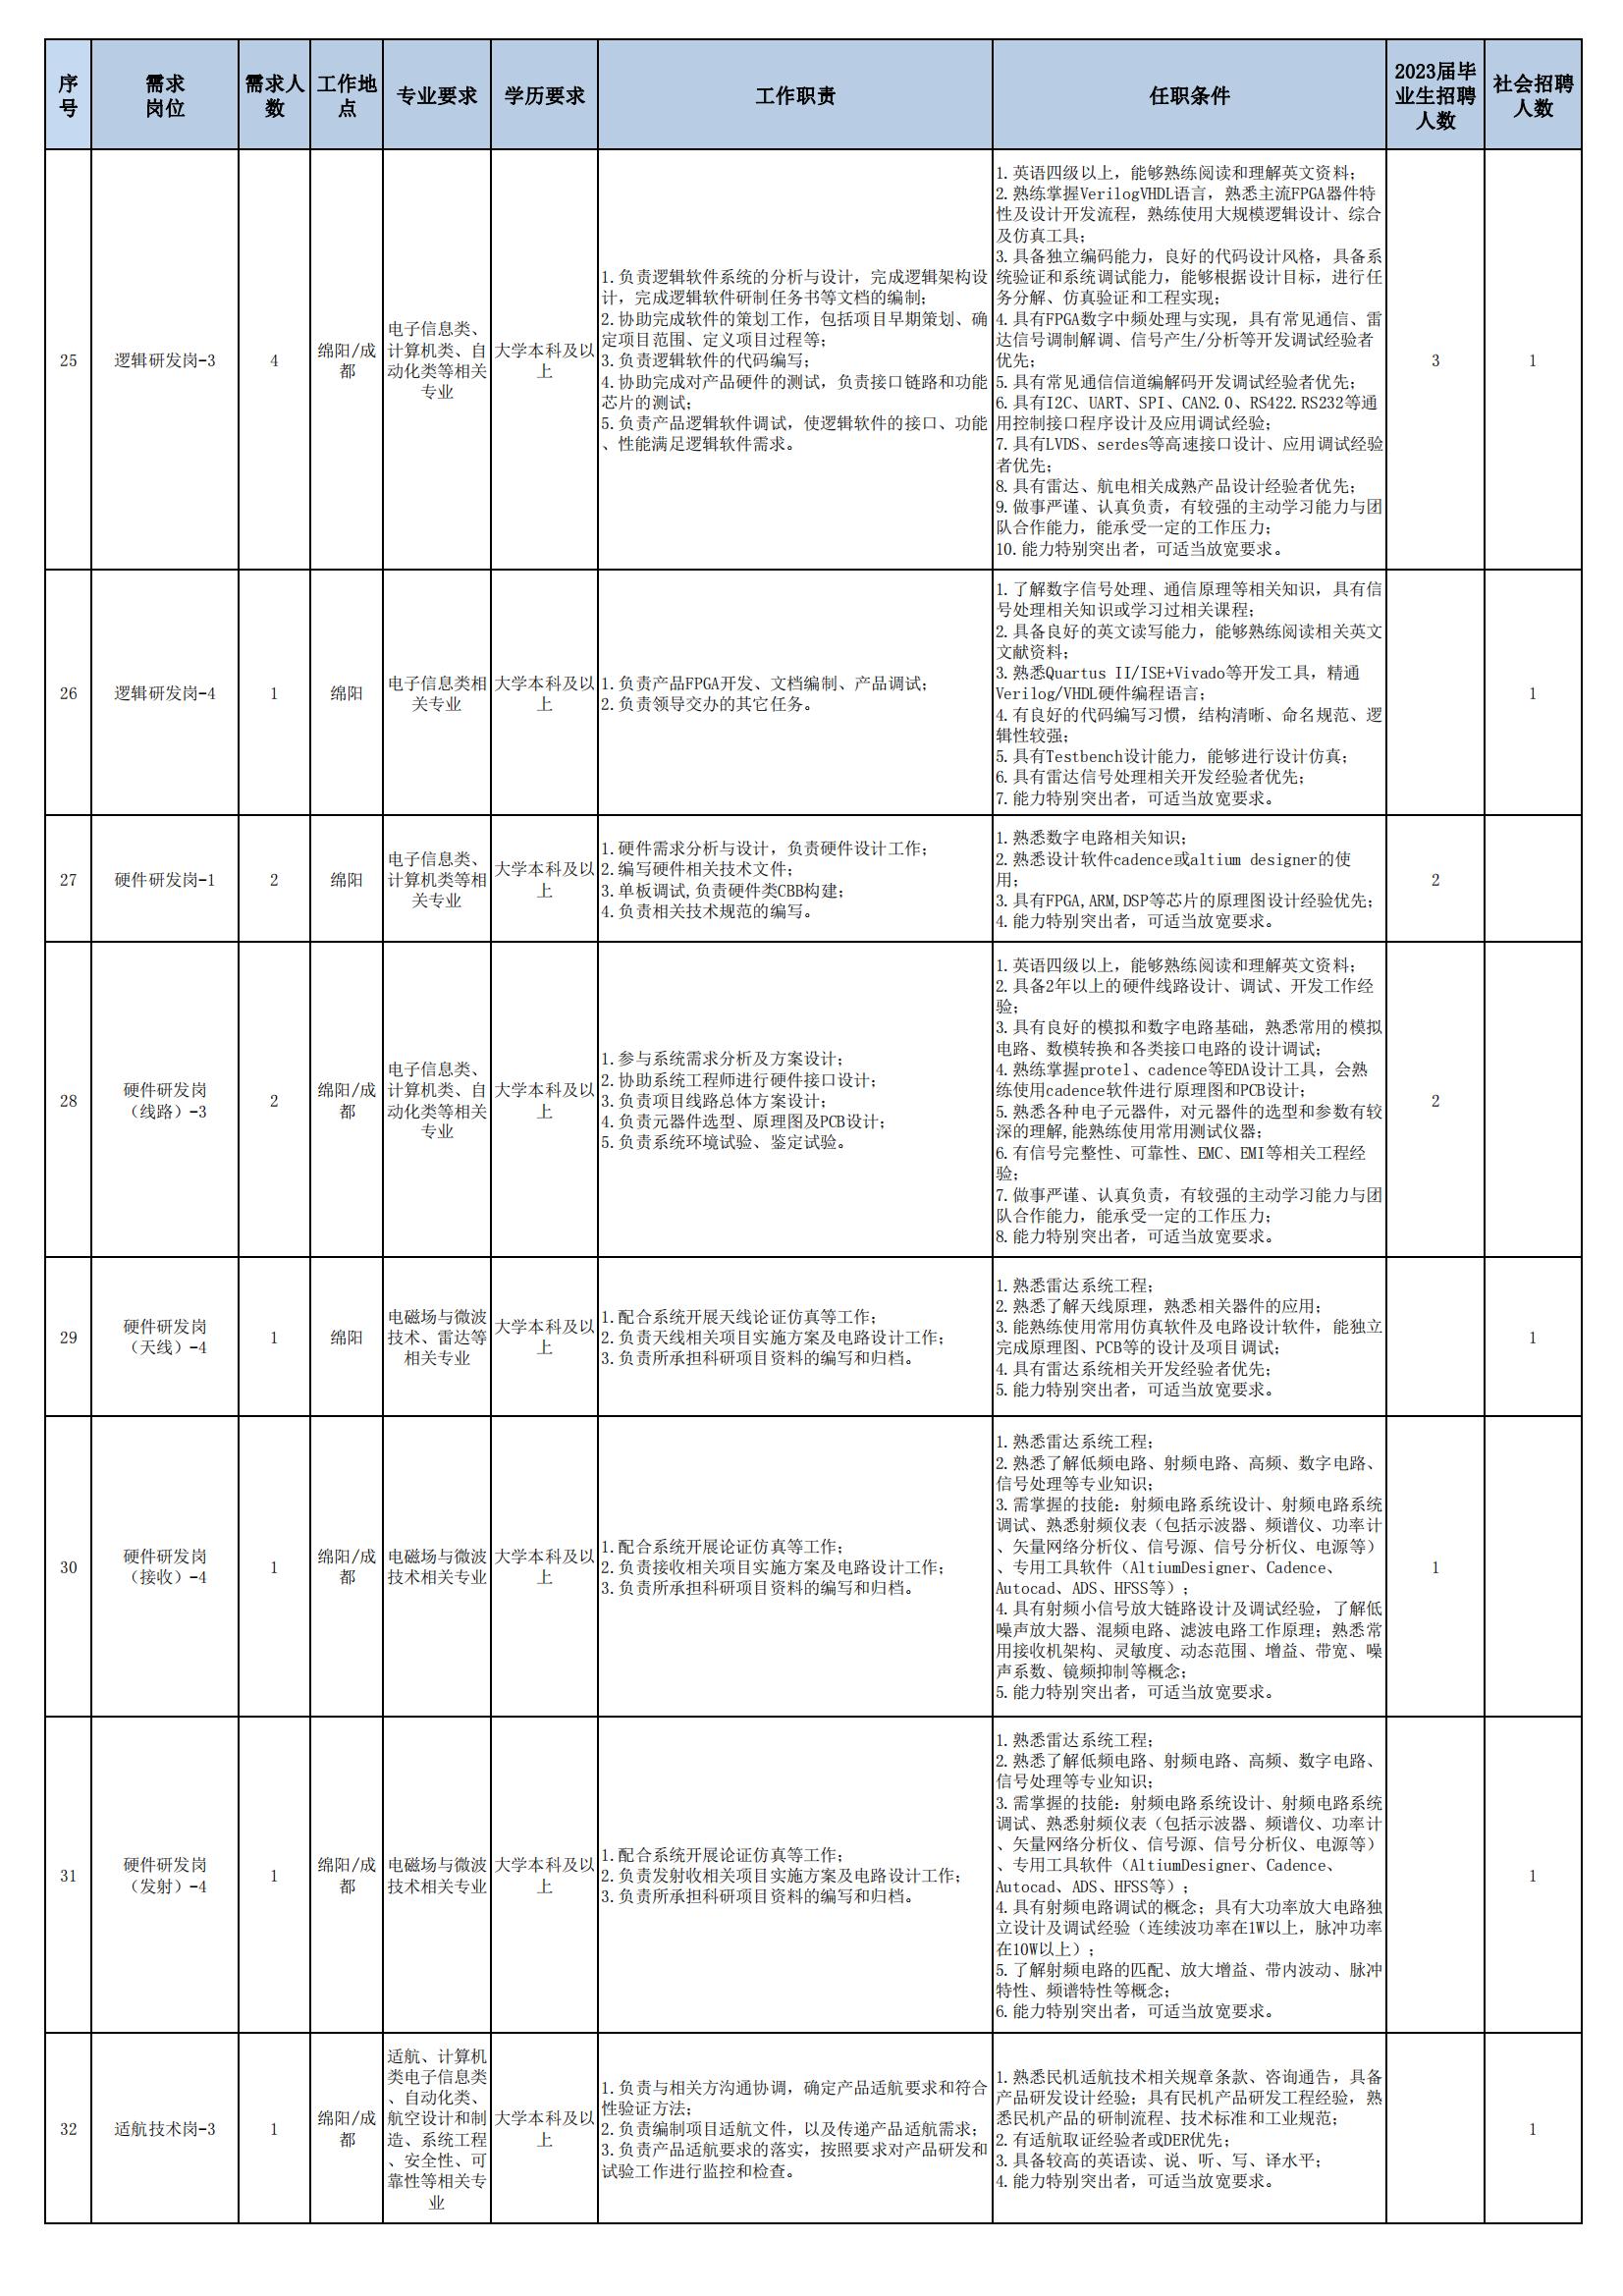 01 四川九洲空管科技有限责任公司招聘岗位列表 - 招聘公告（07月更新）_03.jpg